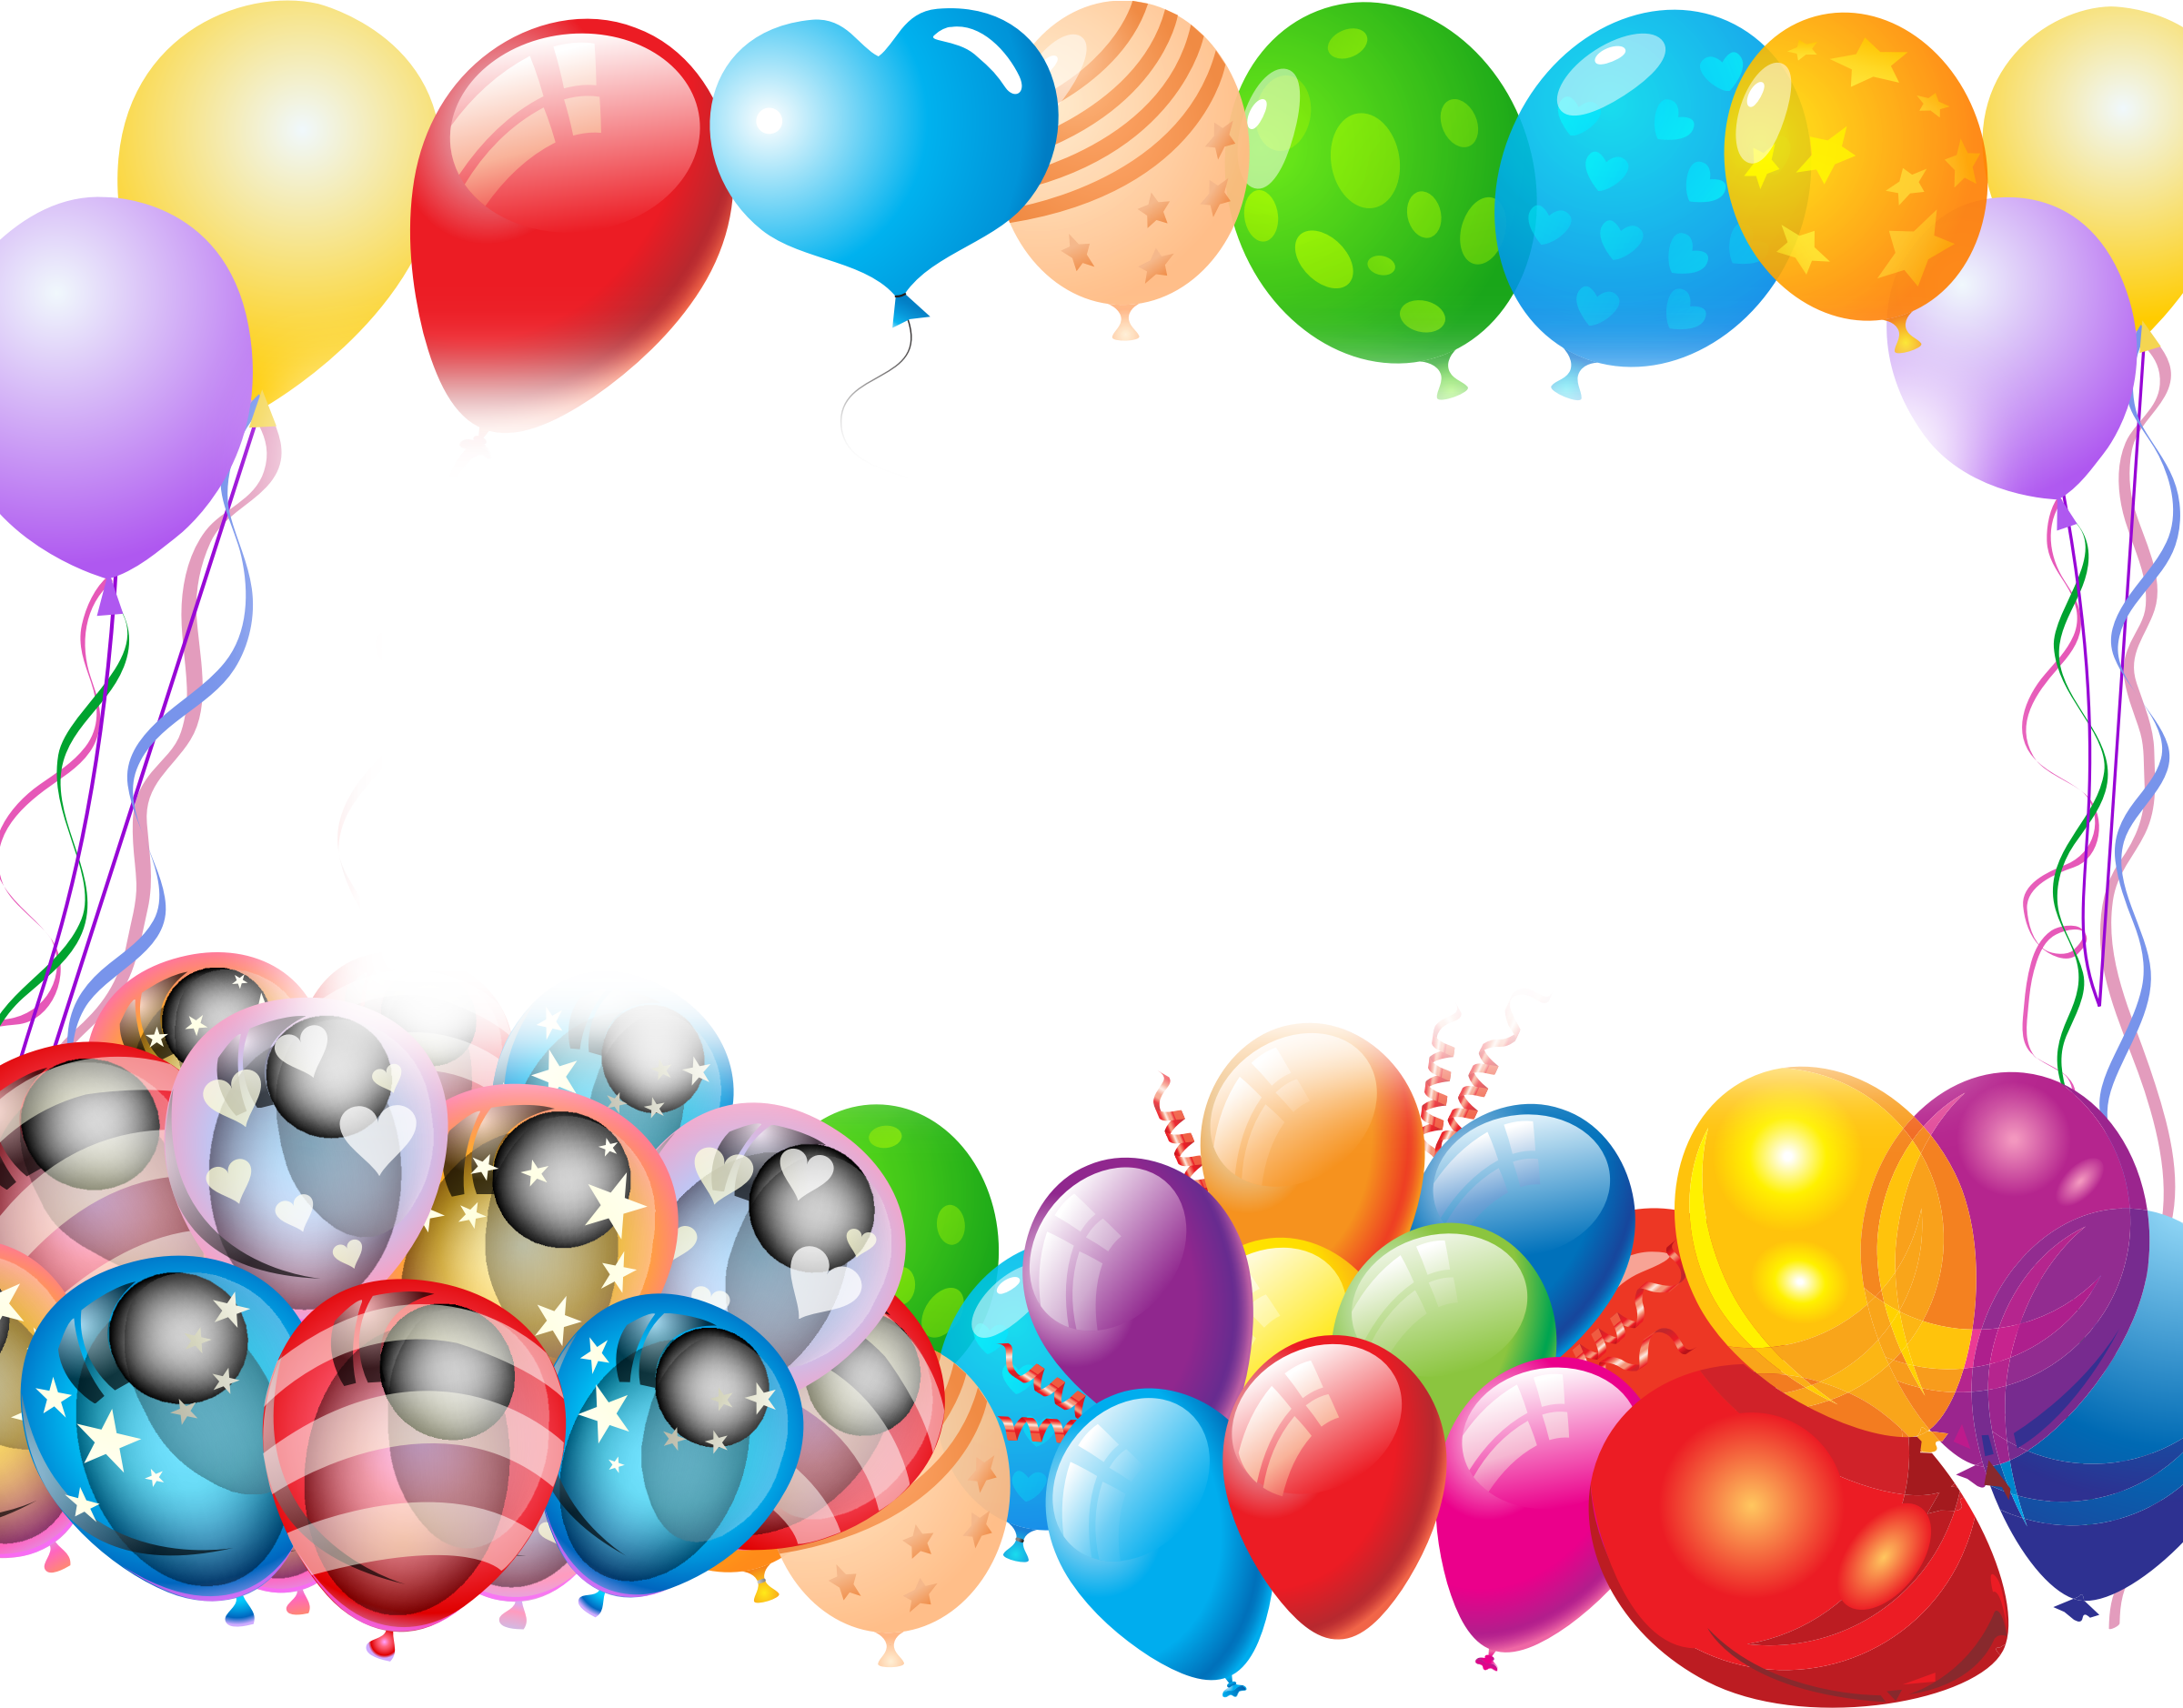 Вечеринка Воздушные шары PNG Image